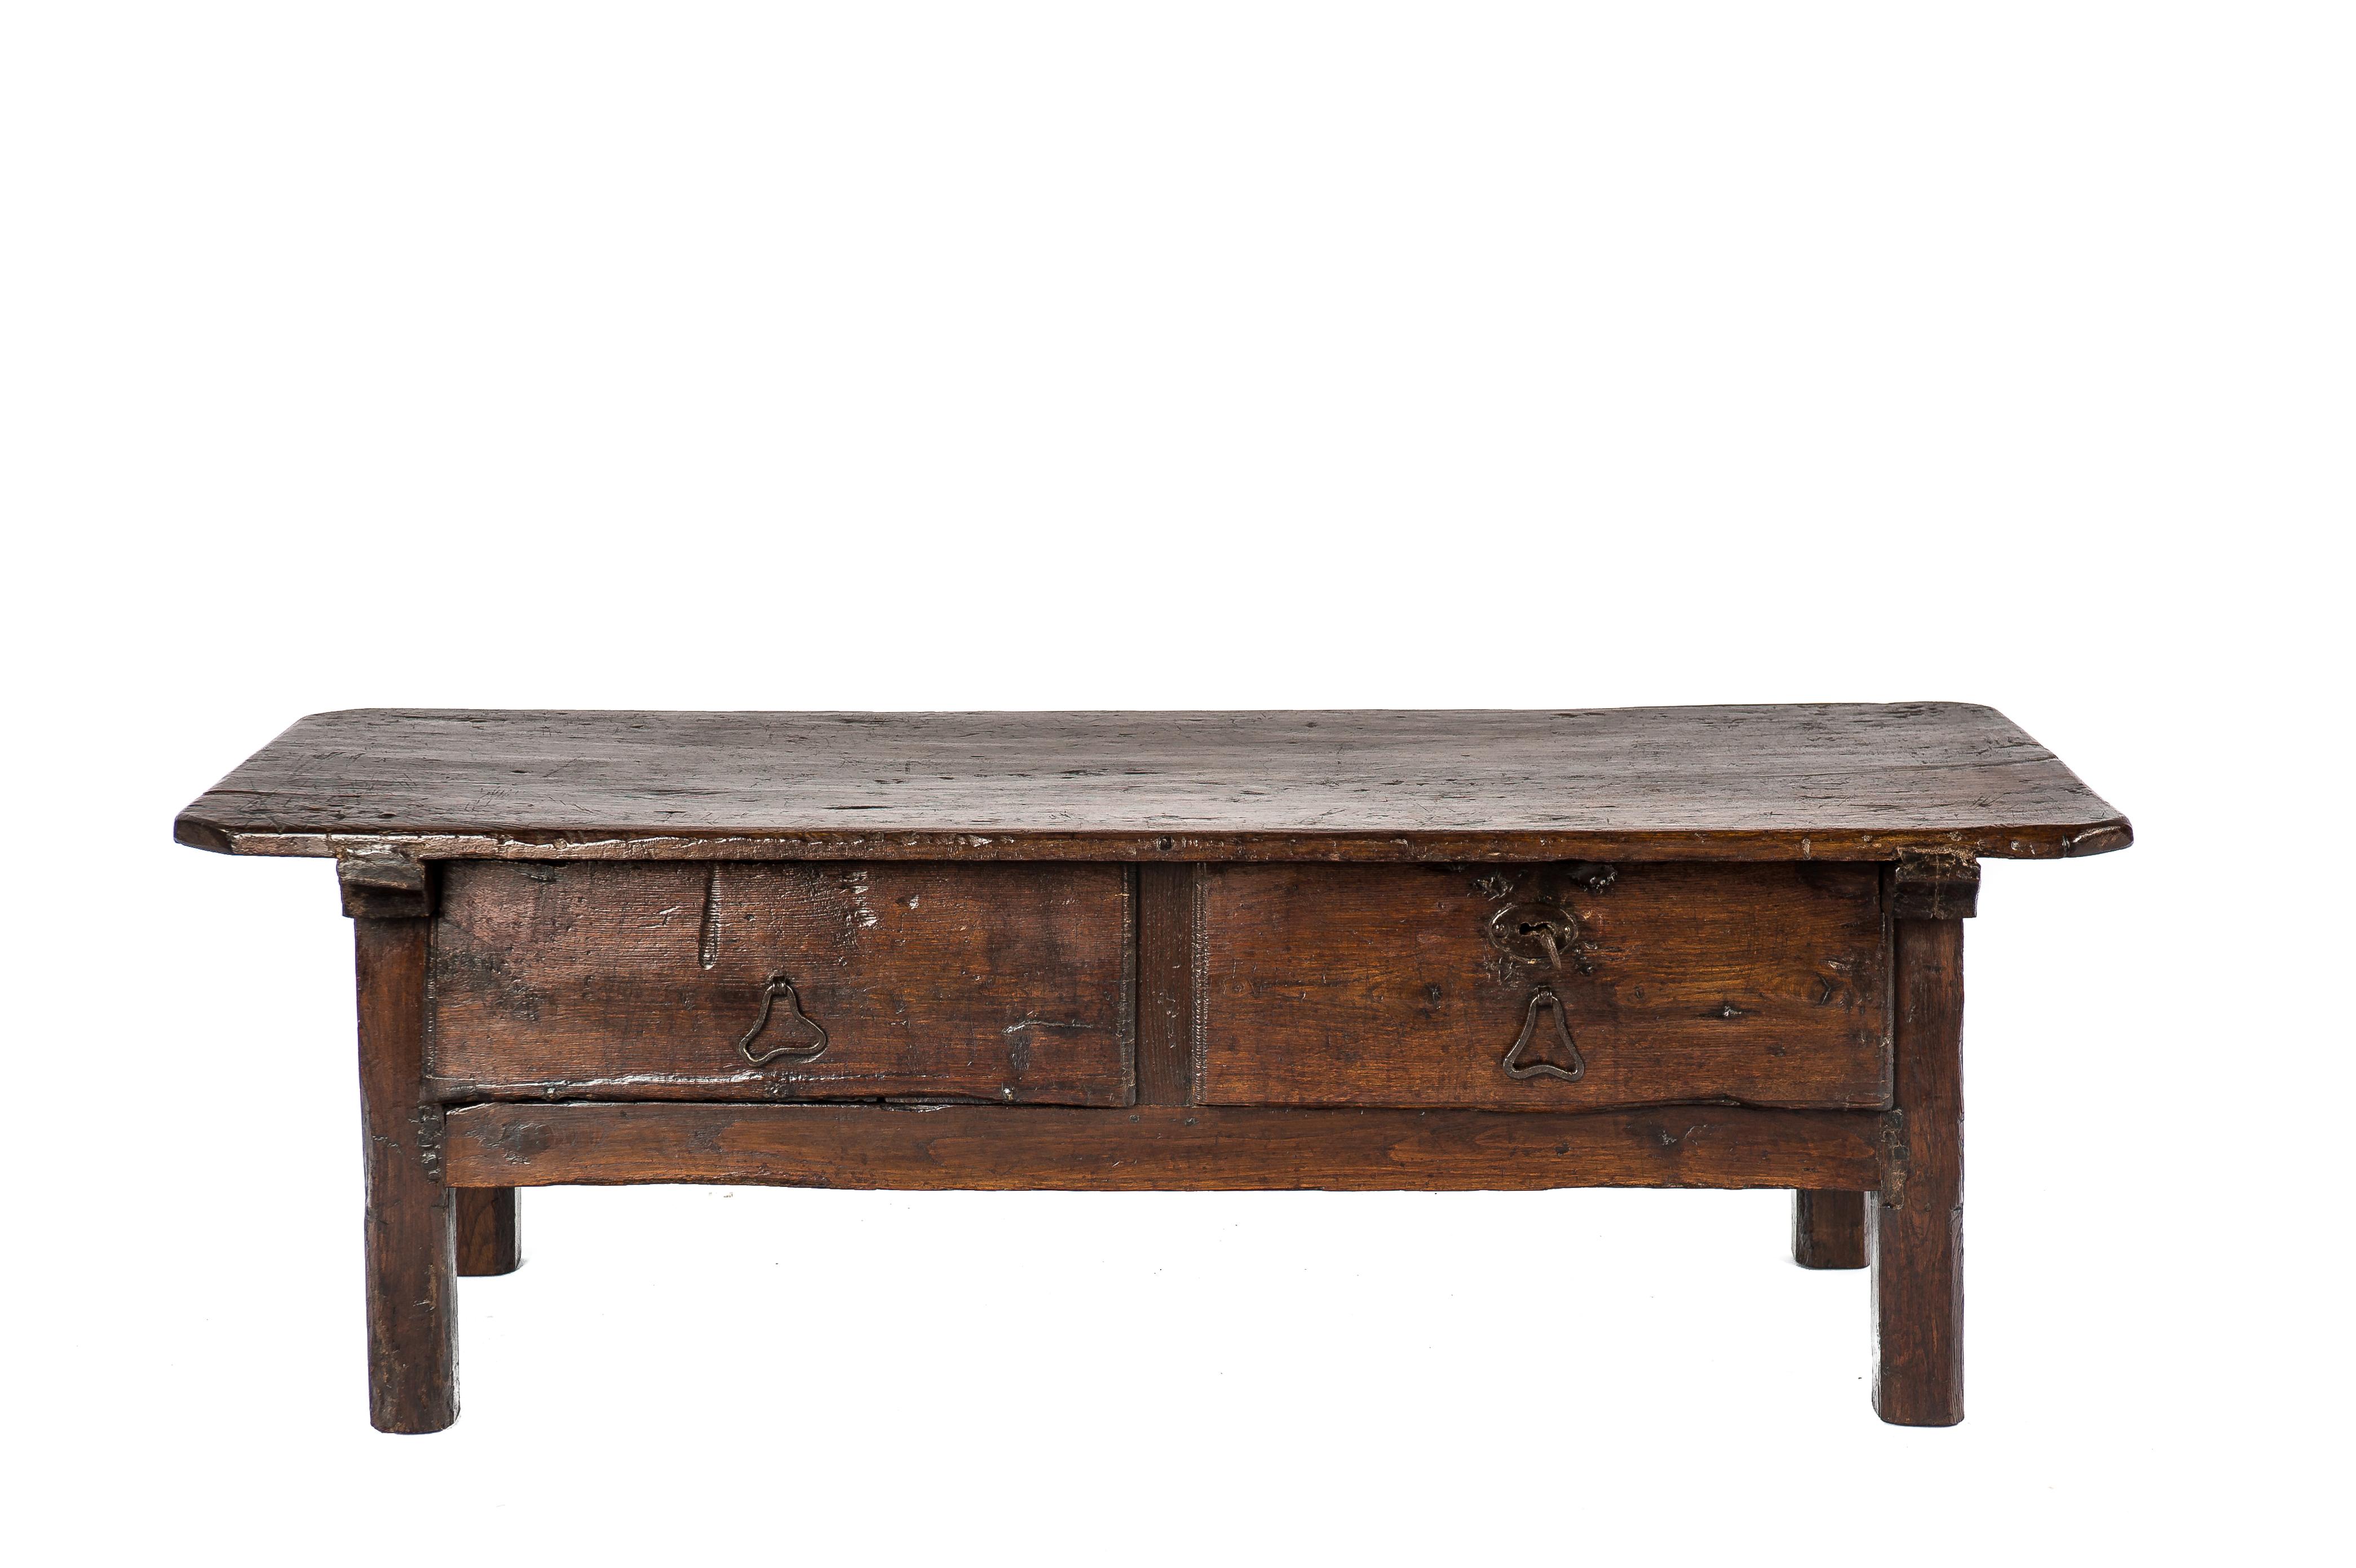 Cette belle table basse ou table basse rustique de couleur brun chaud est originaire d'Espagne et date d'environ 1780. Le plateau de la table est unique et a été fabriqué à partir d'une seule planche de bois de châtaignier massif d'un pouce